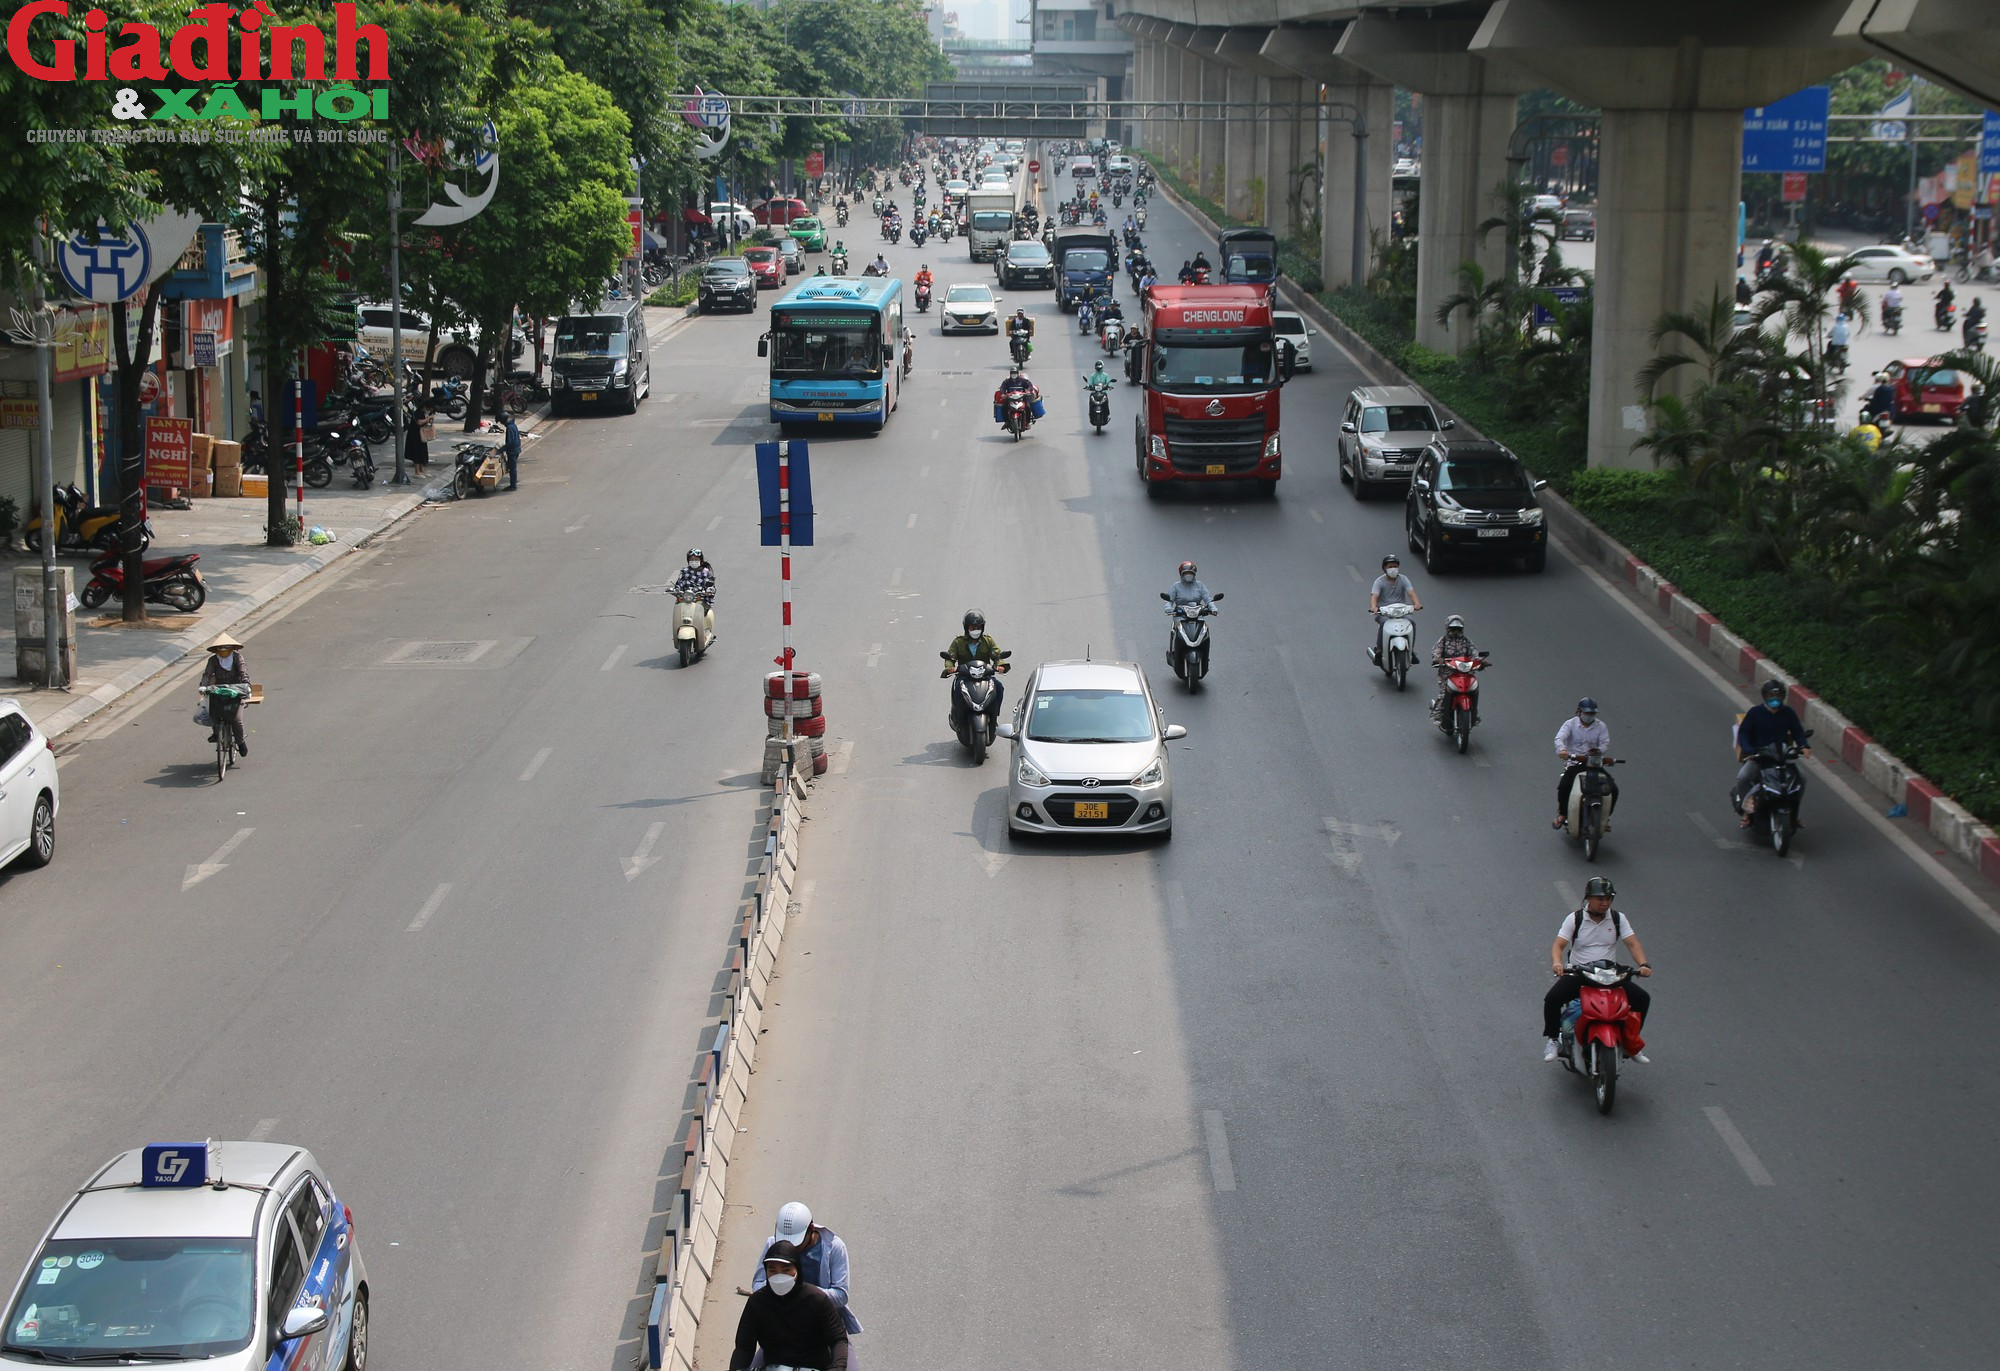 Sau gần một năm thí điểm, cột phân làn gãy đổ, người dân vẫn mạnh ai nấy đi trên đường Nguyễn Trãi - Ảnh 5.